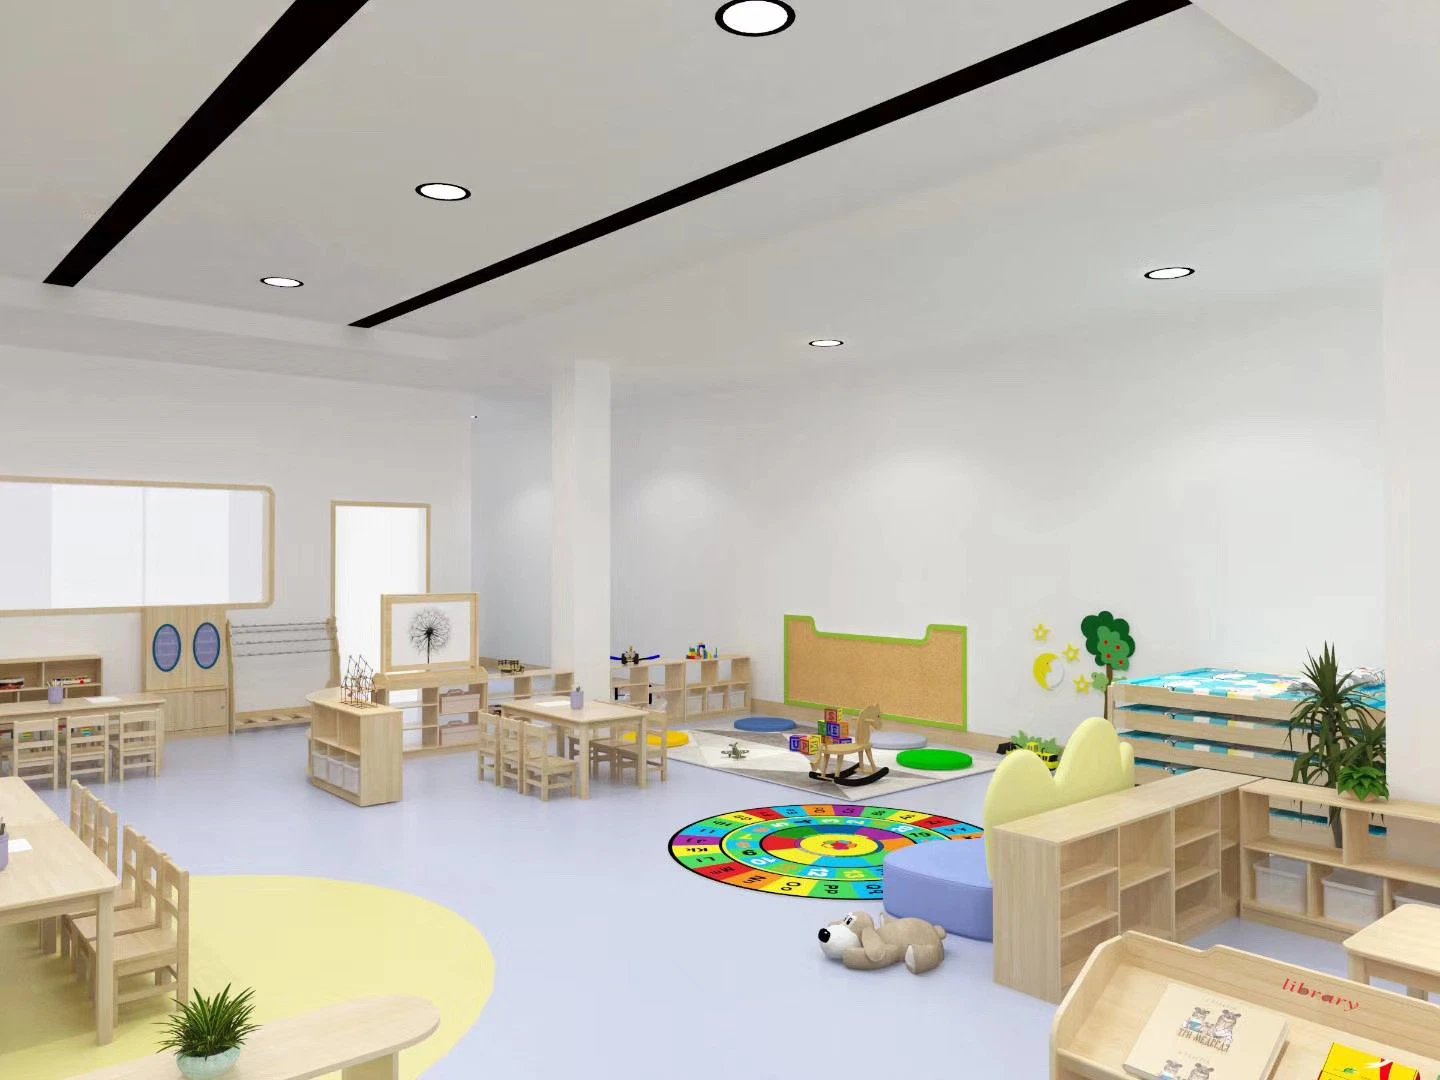 Fábrica de Venda completa China fábrica de Crianças cadeira Infantil Kindergarten, móveis de madeira para bebé, mesas e cadeiras pré-escolares, mobiliário escolar para alunos